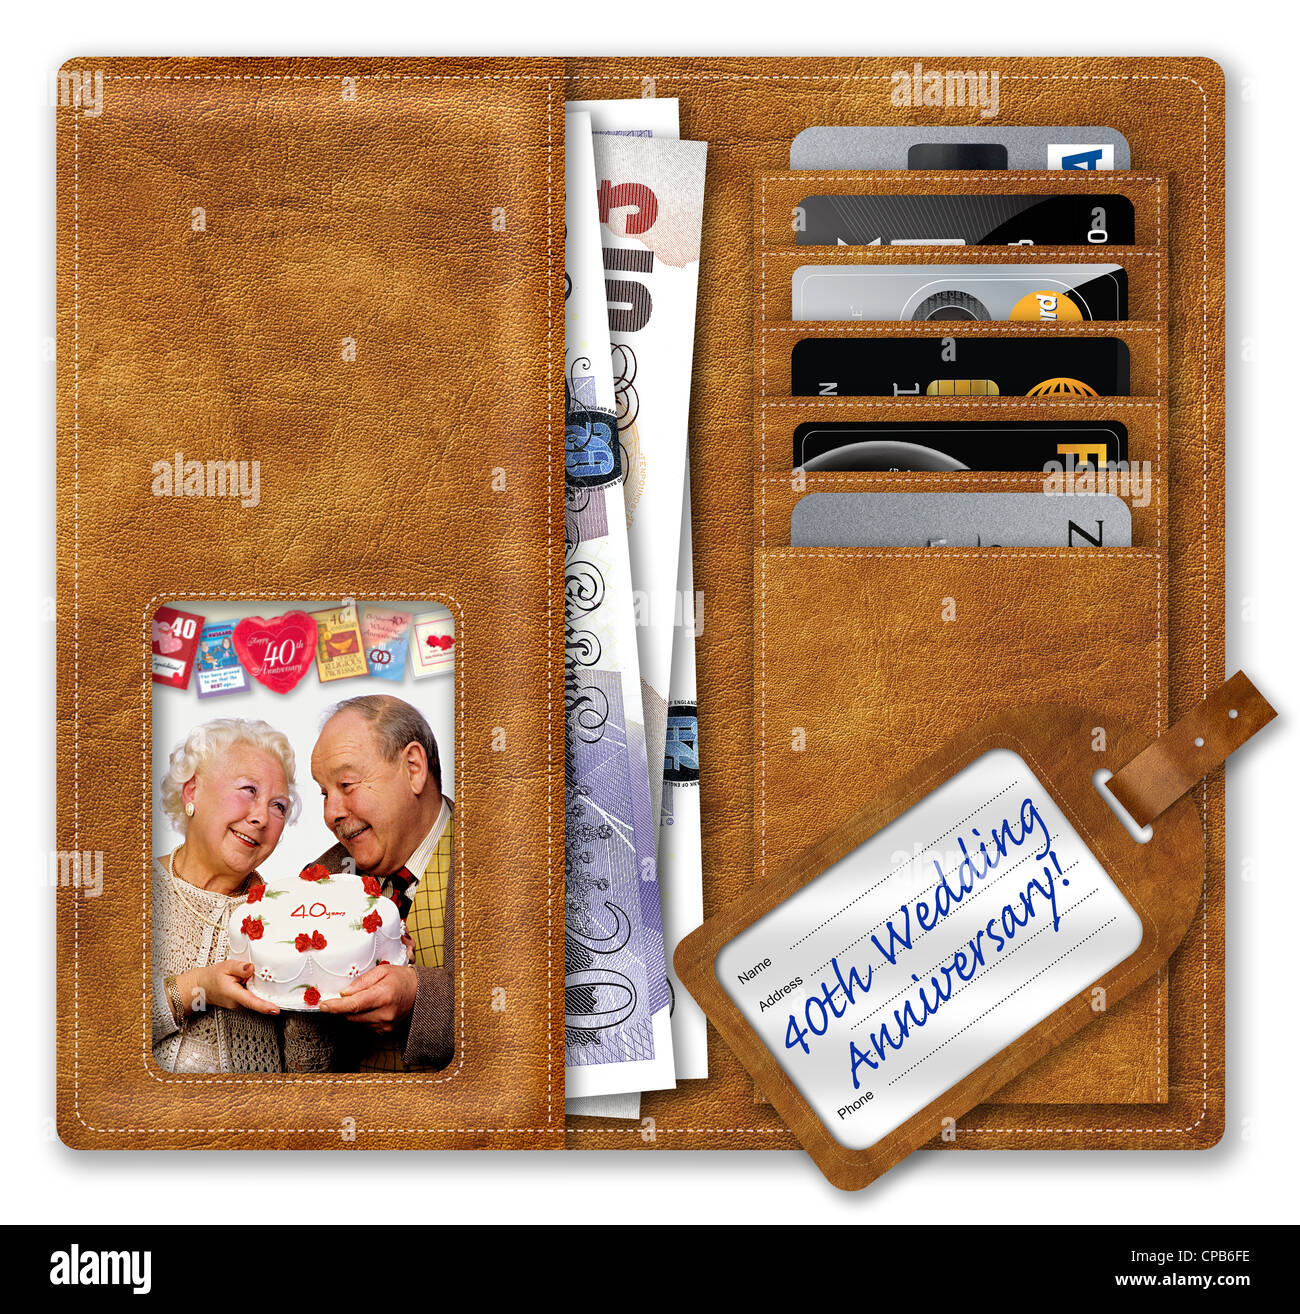 Étui contenant UK Sterling/Livres et cartes de crédit, photo de couple de personnes âgées, et 40e anniversaire de mariage ! Étiquette de bagages Banque D'Images